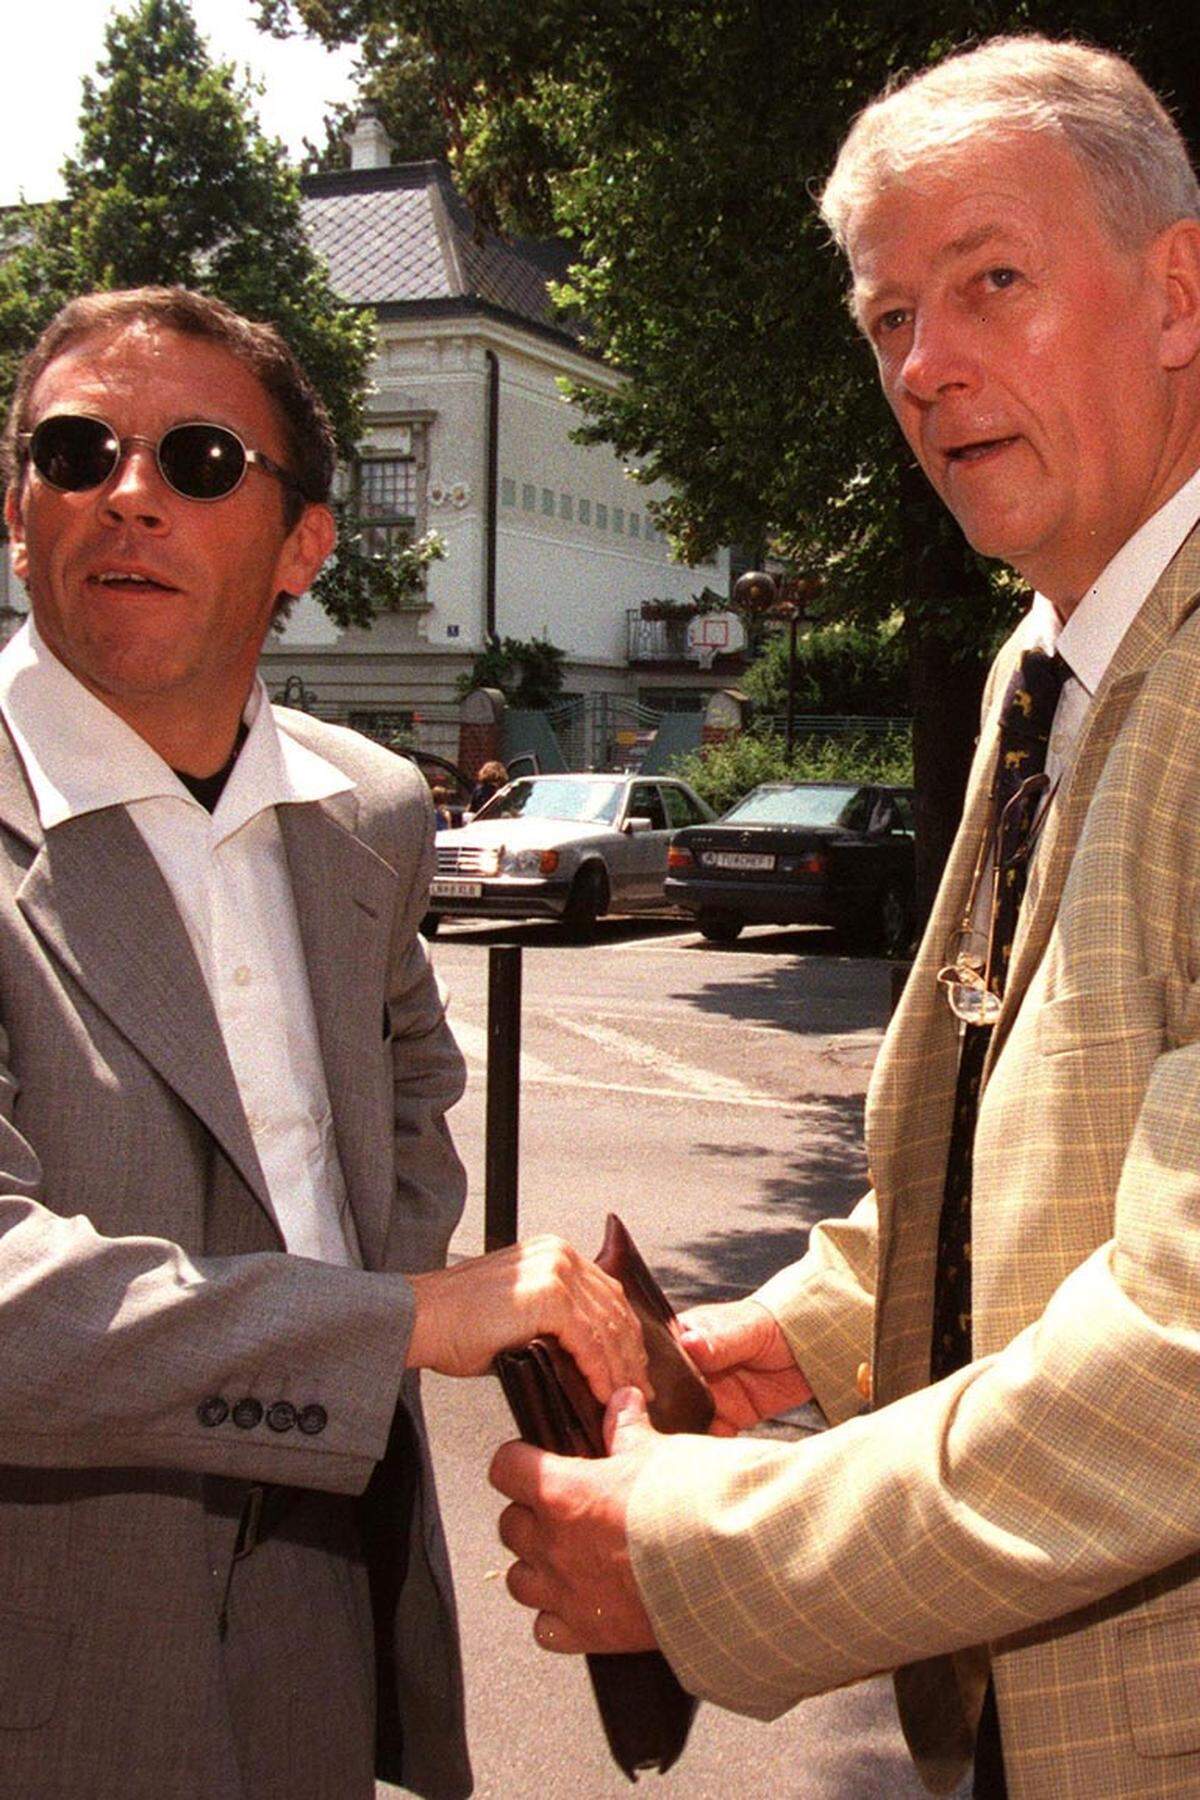 Ebenso wie Kronberger aus der "Argumente"-Redaktion des ORF kam auch Hans-Jörg Schimanek. 1993 wechselte er für die FPÖ vom ORF auf einen Landesrats-Sitz in Niederösterreich, 2005 trat er erfolglos als BZÖ-Spitzenkandidat bei den Wiener Landtagswahlen an, derzeit ist er Bezirksrat in Wien-Floridsdorf.